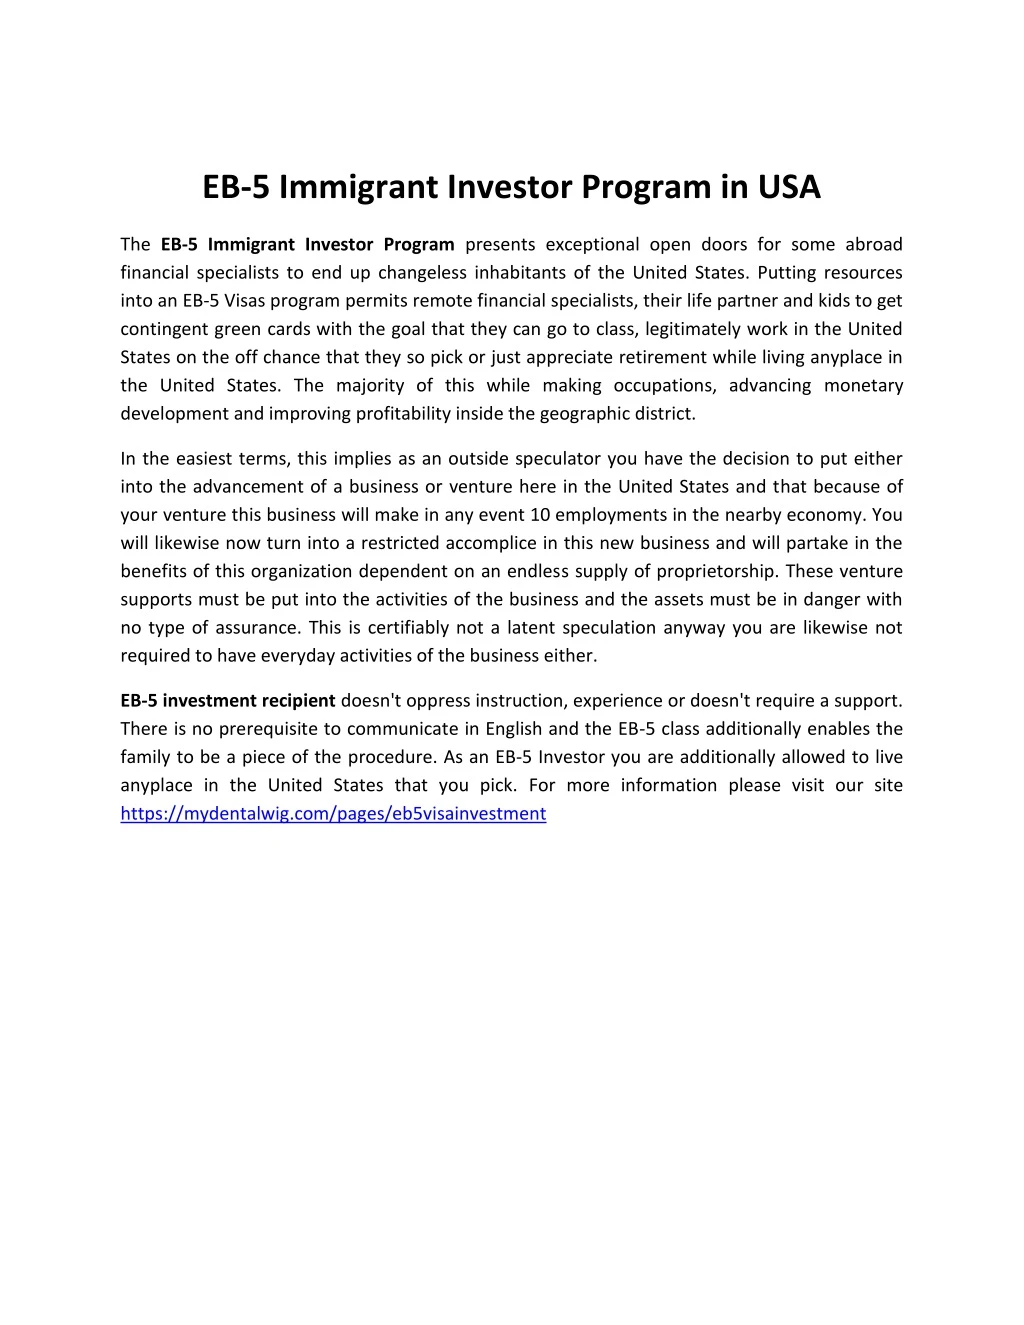 eb 5 immigrant investor program in usa